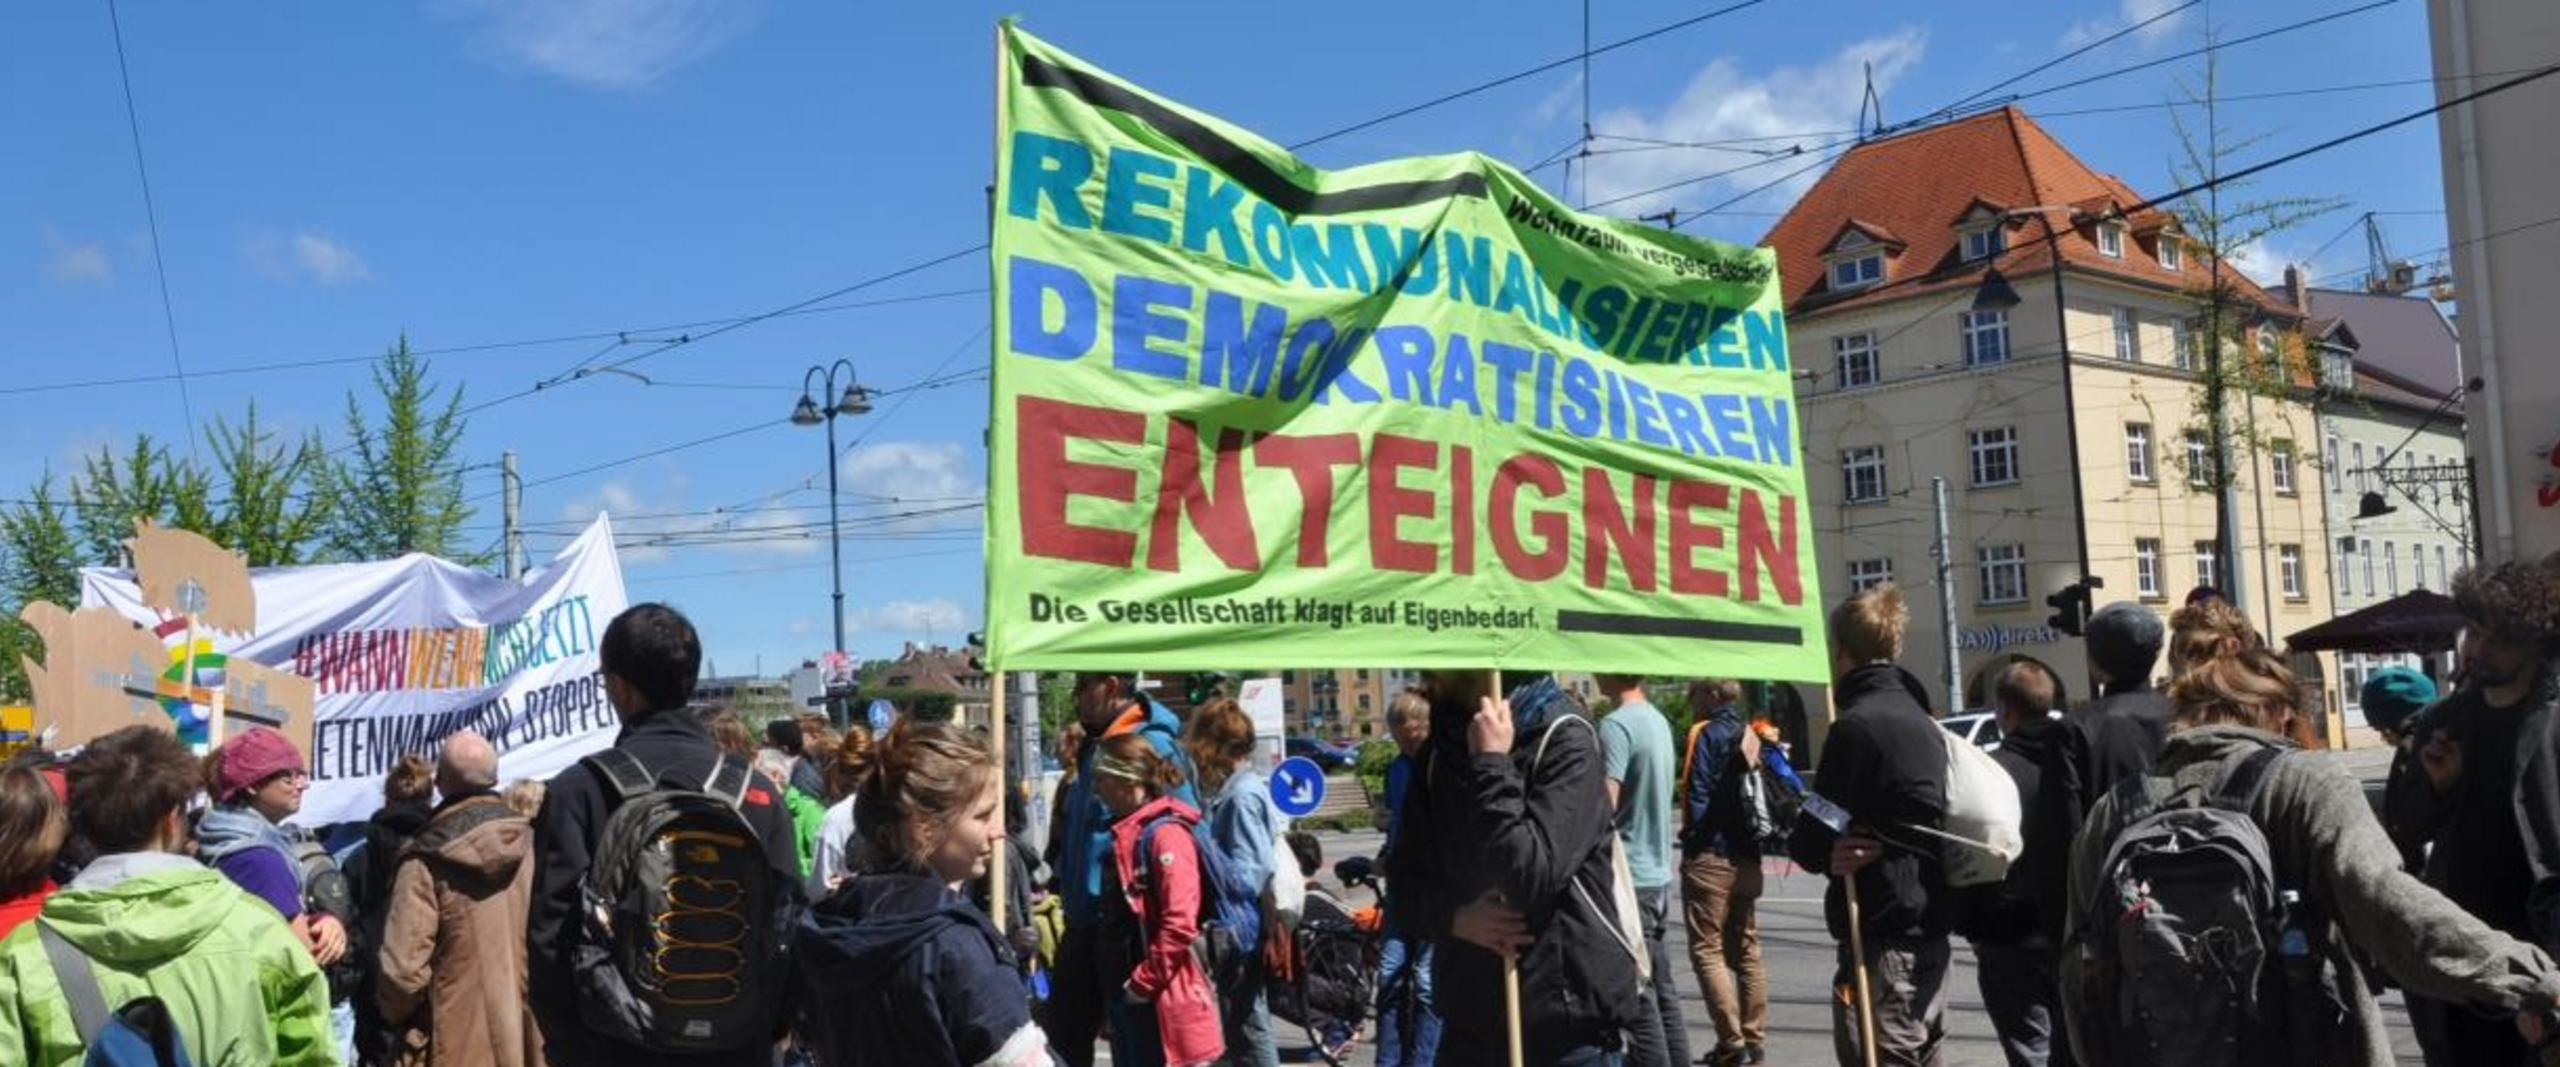 Demonstration auf der Straße. Foto: Elodie Vittu / Institut für europäische Urbanistik (IfEU)